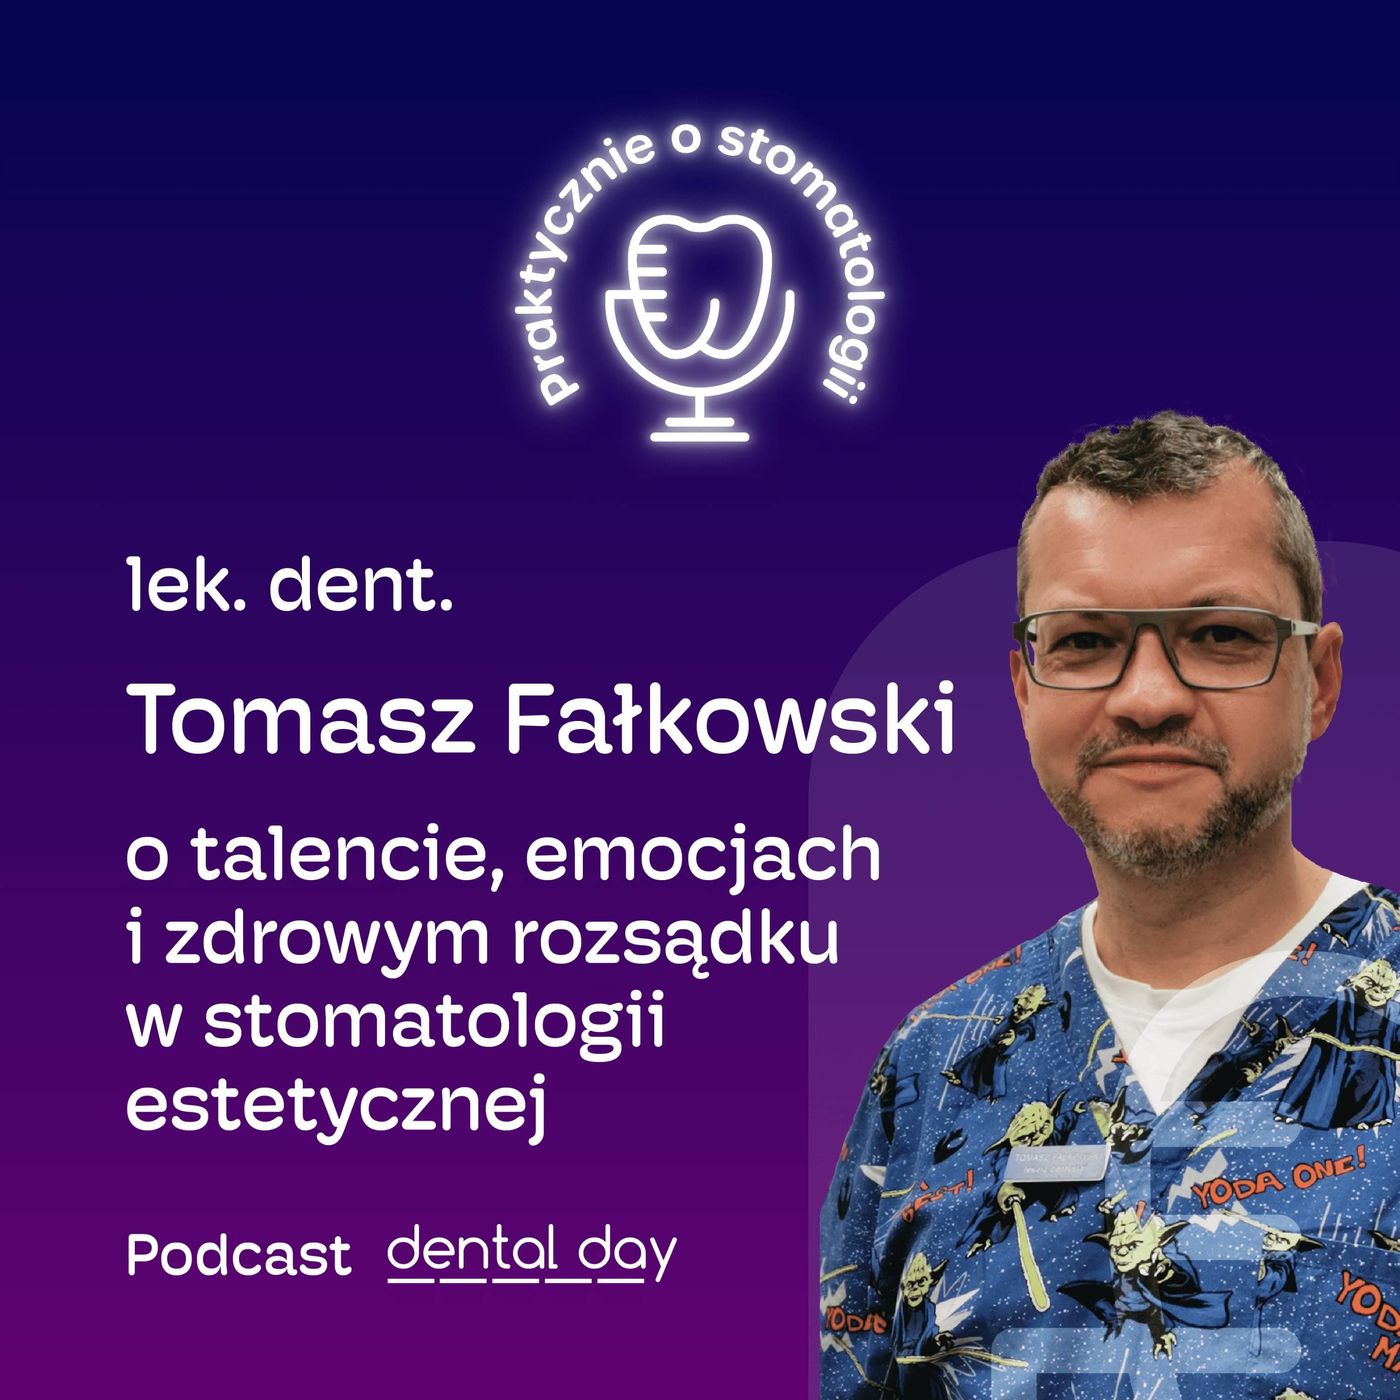 lek. dent. Tomasz Fałkowski: o talencie, emocjach i zdrowym rozsądku w stomatologii estetycznej